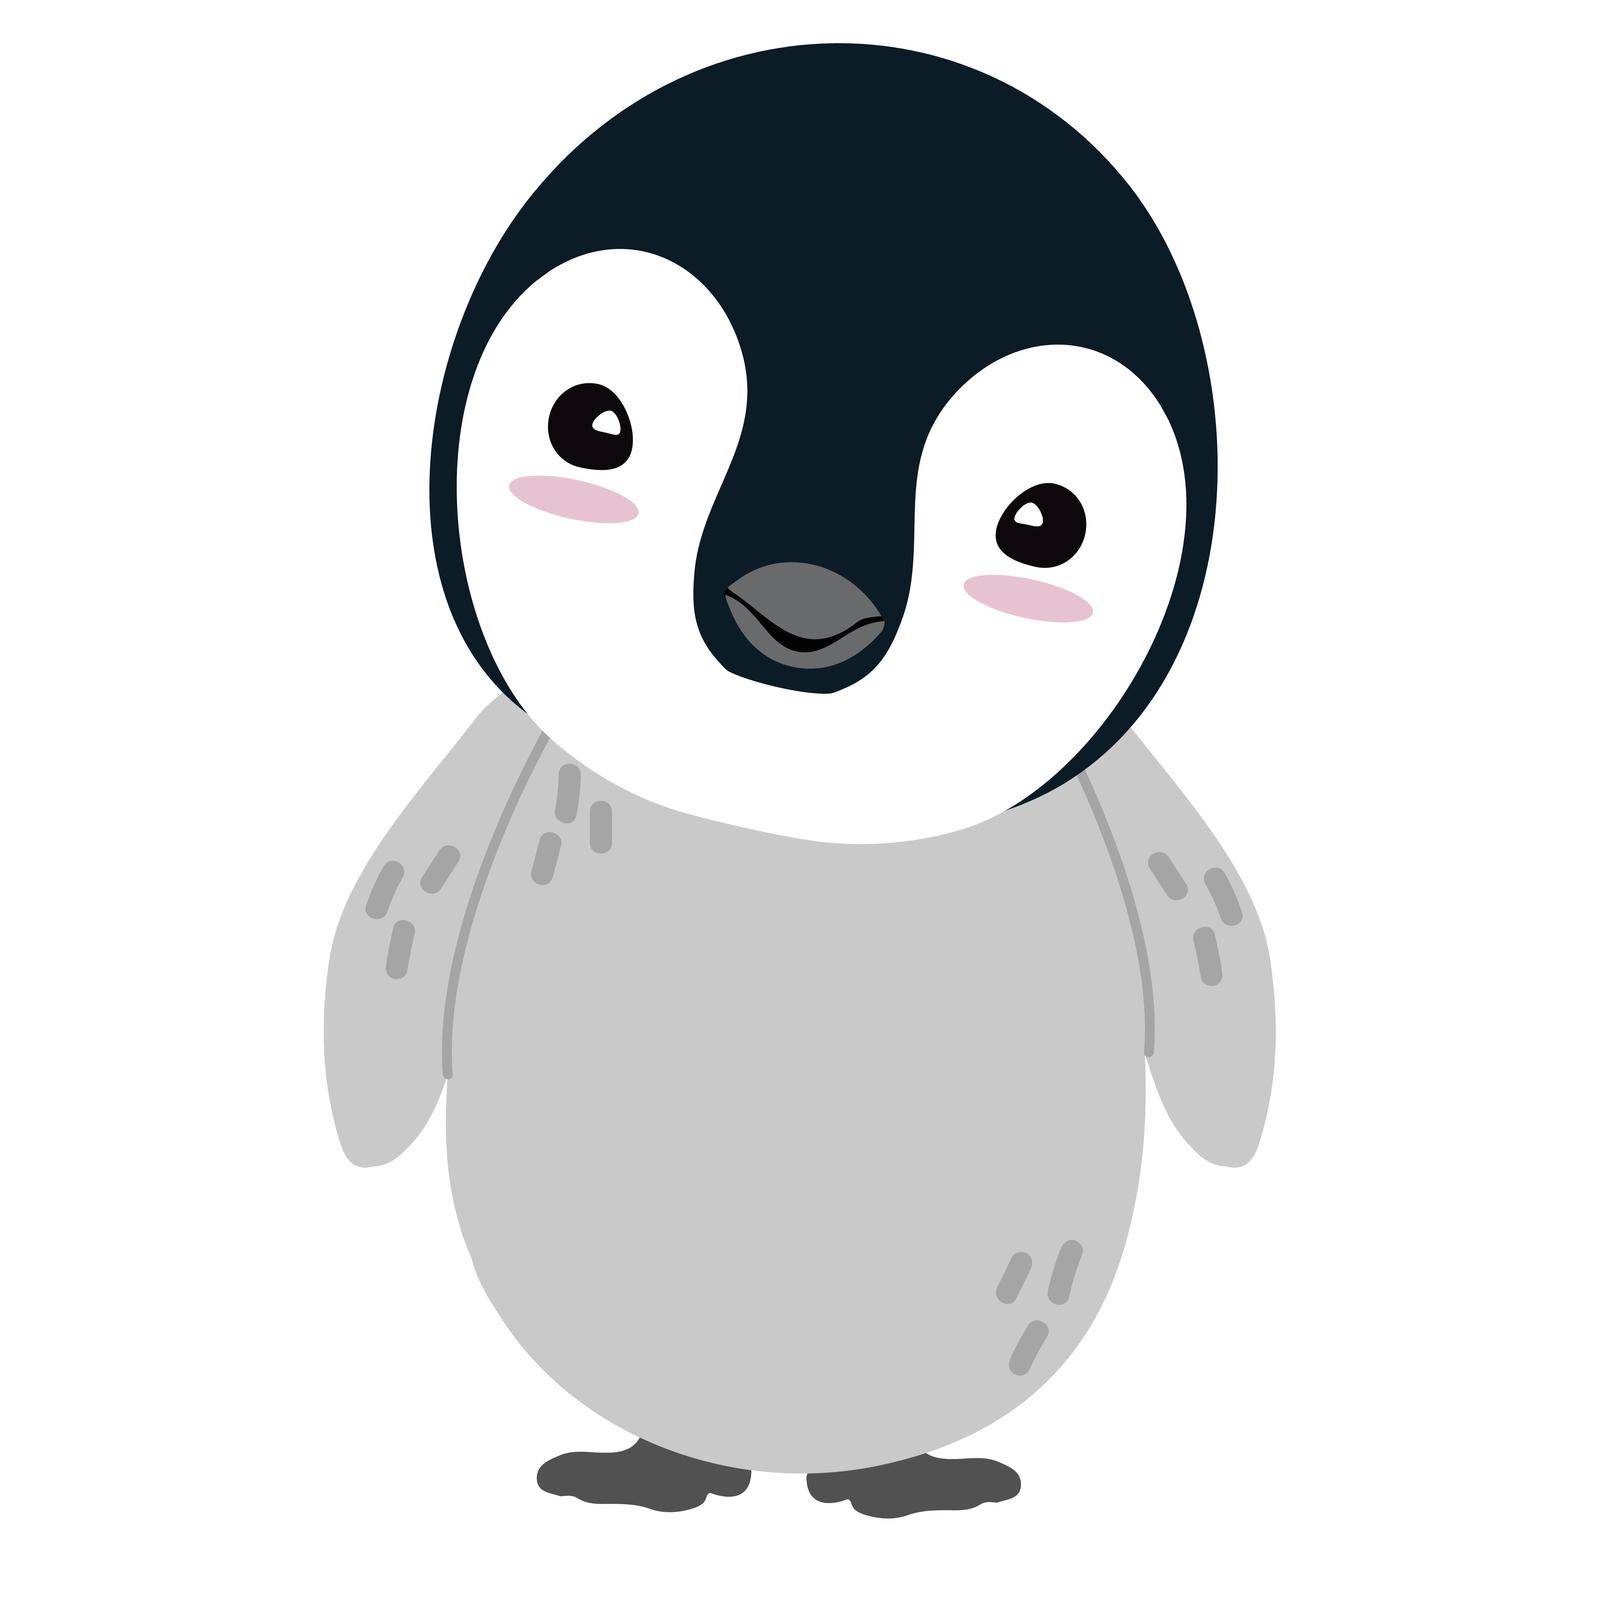 Cute chick Penguin cartoon flat vector